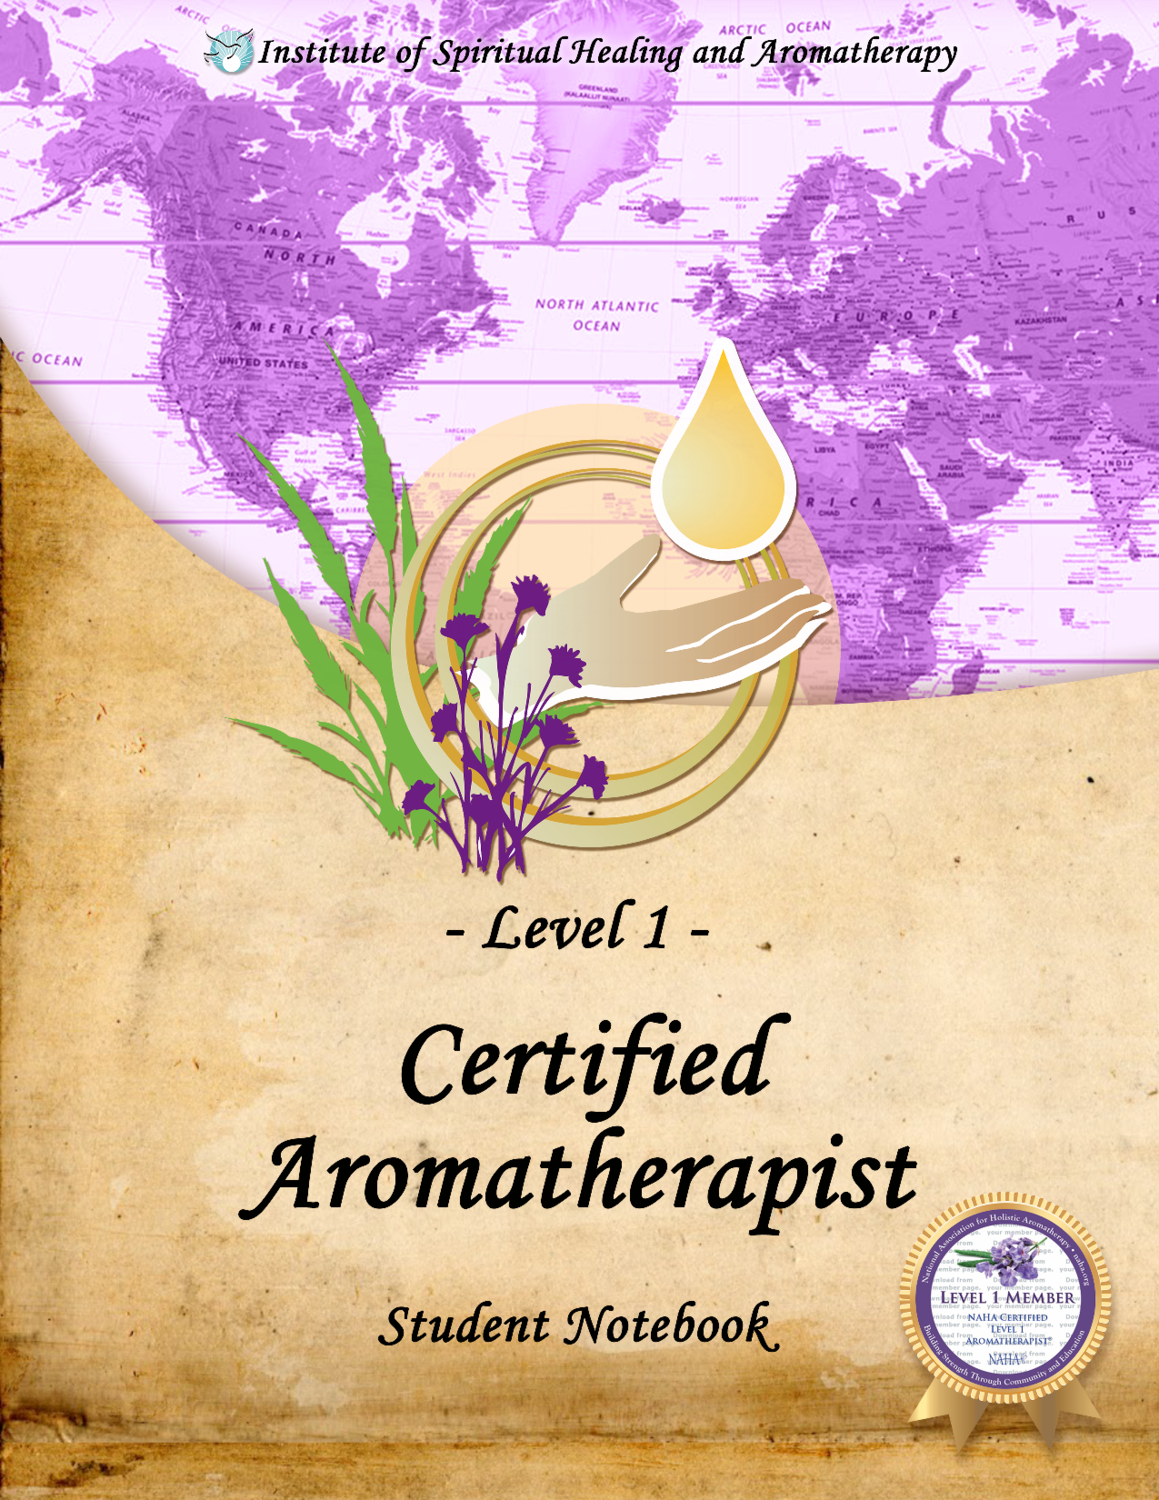 Certified Aromatherapist - Level 1 - Knoxville, TN - June 22-24, 2018